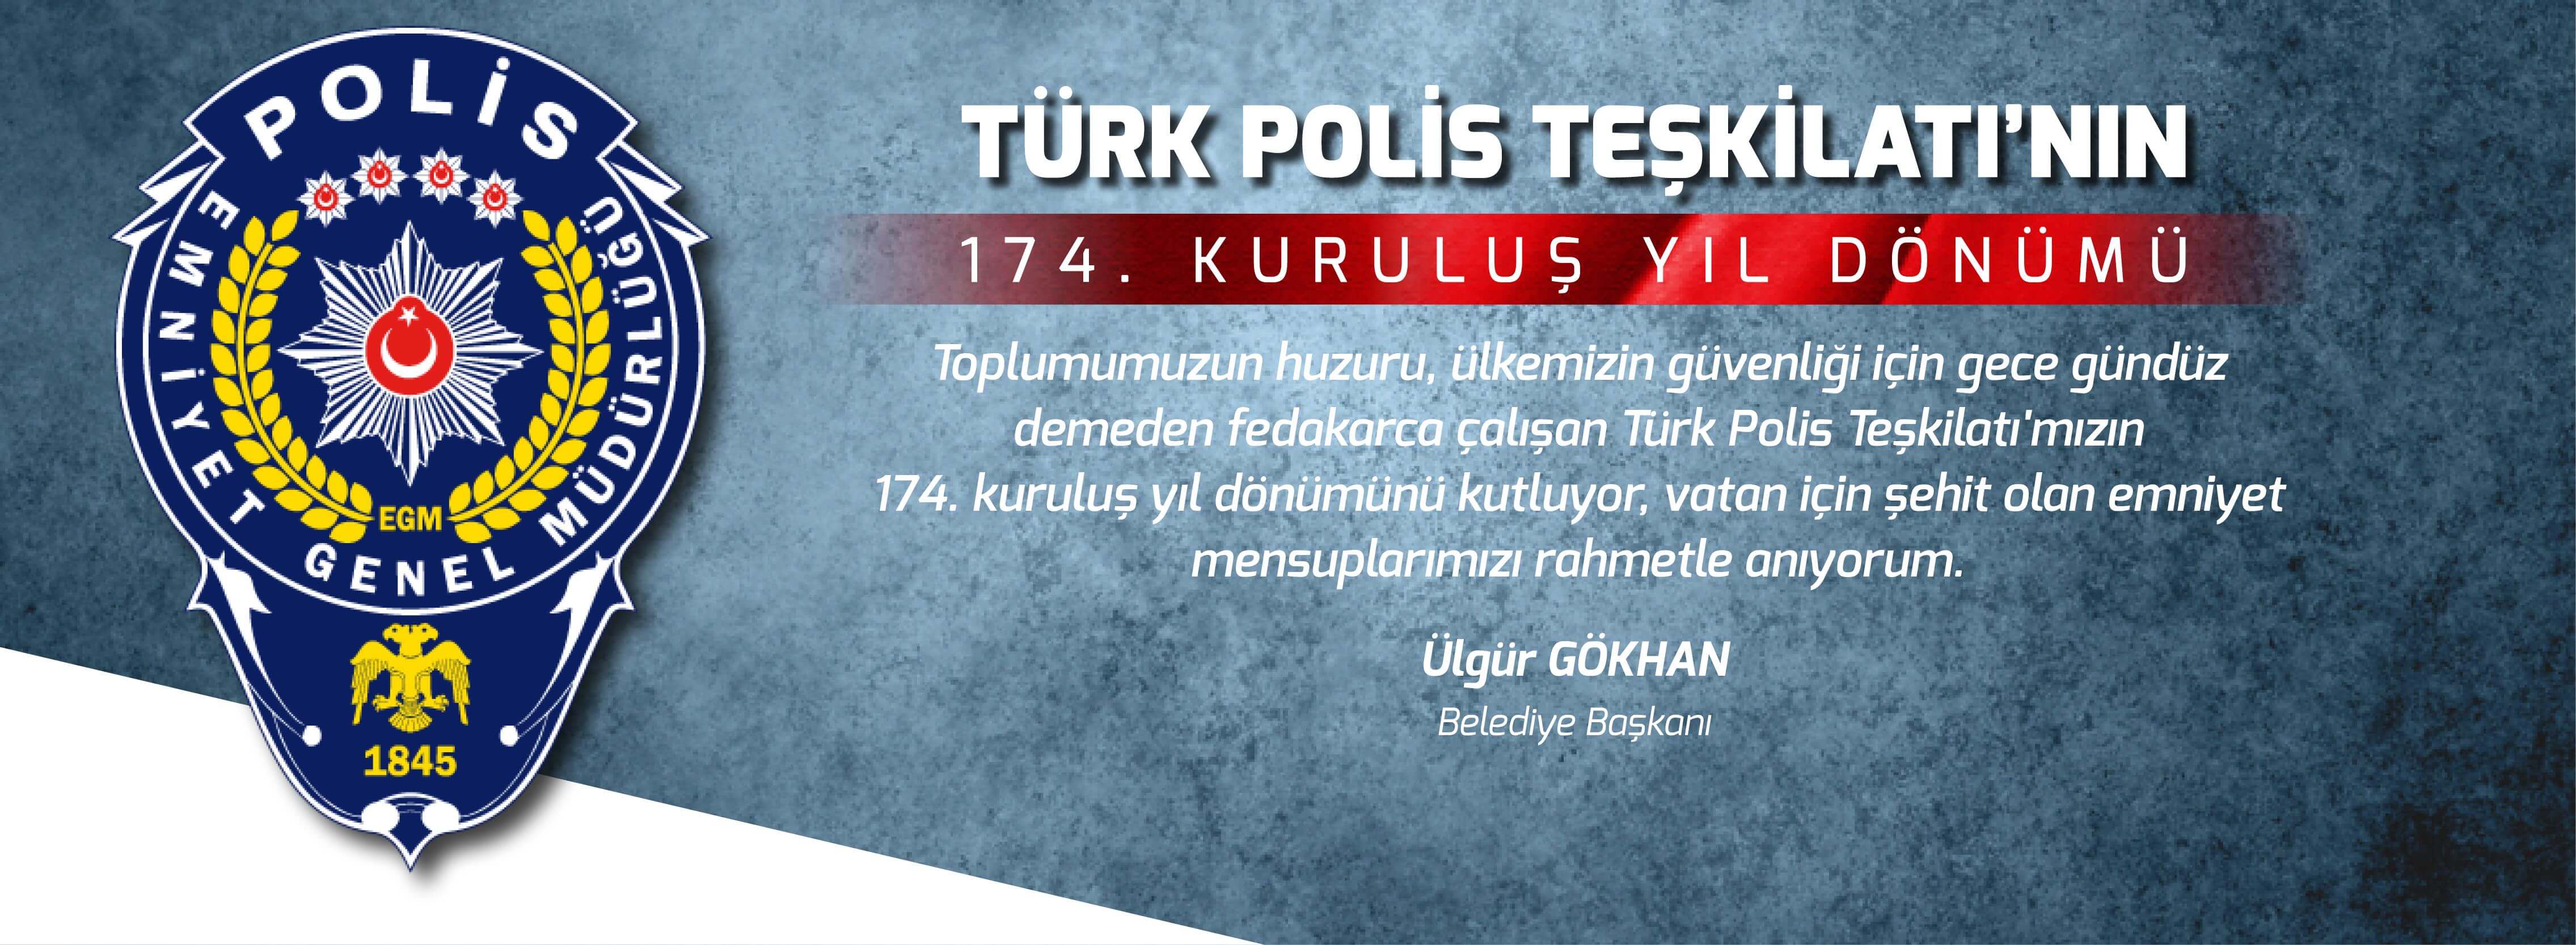 Belediye Başkanı Sayın Ülgür Gökhan'ın Türk Polis Teşkilatının 174. Kuruluş Yıldönümü Mesajı...